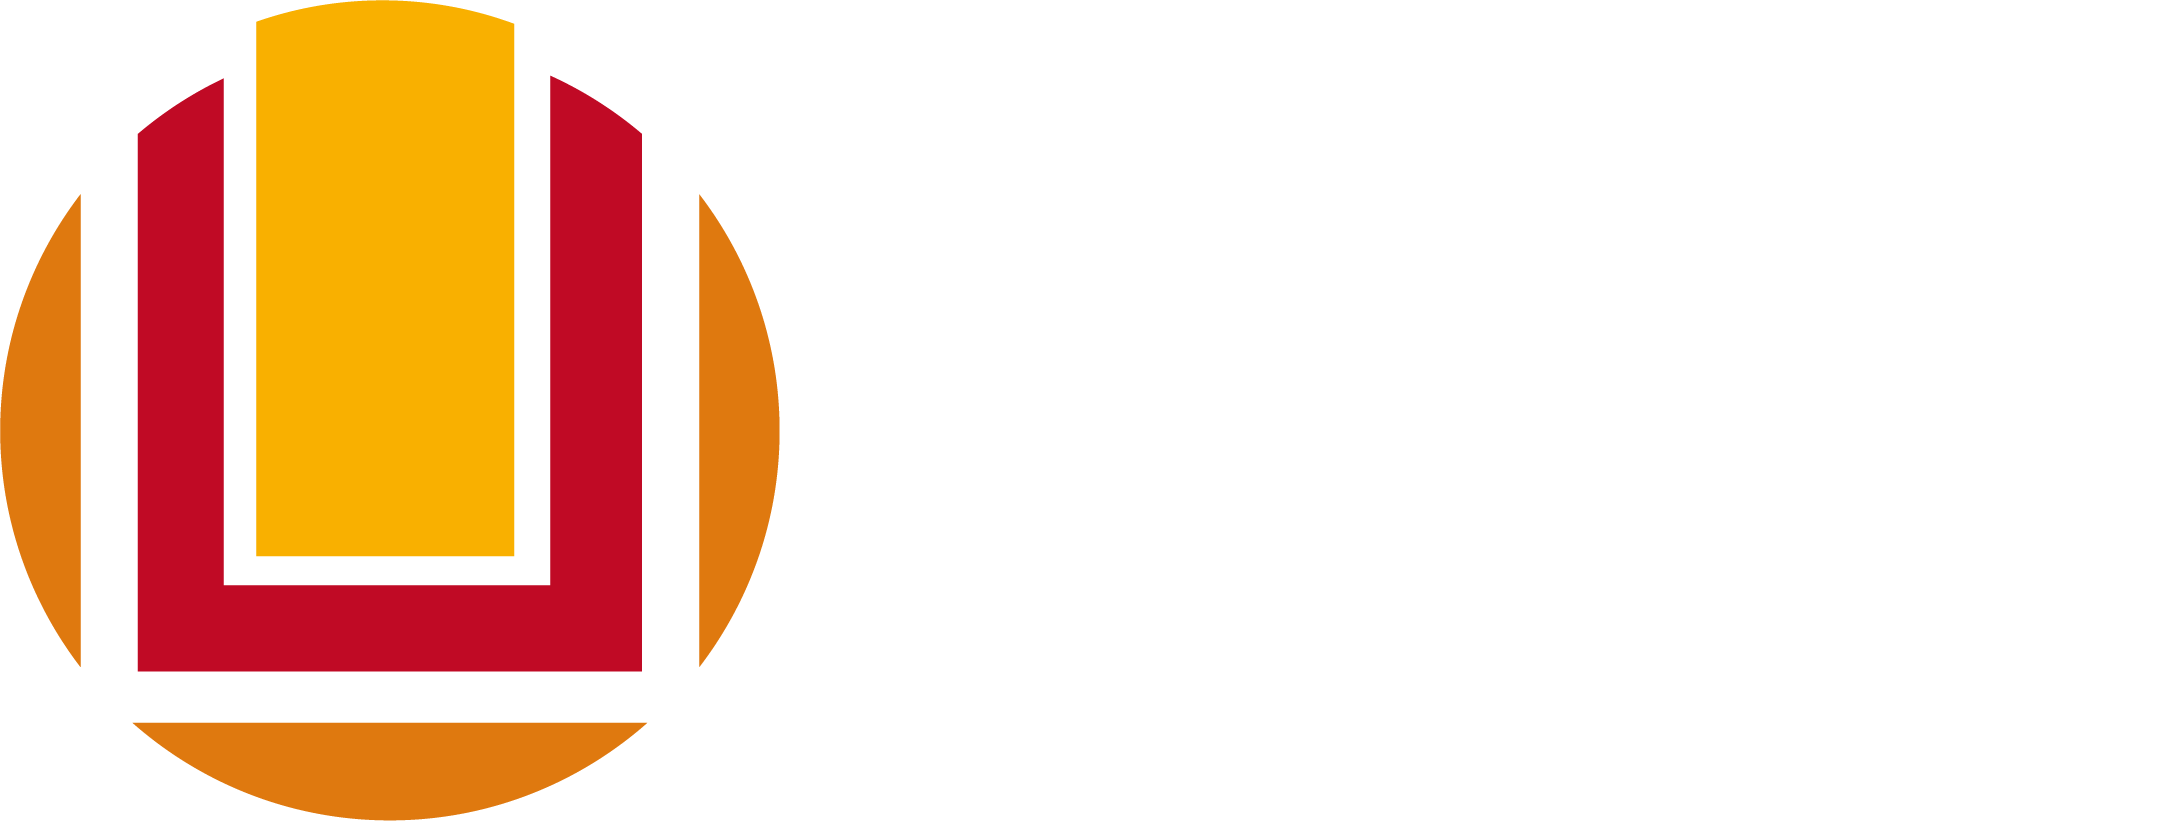 Universidade Federal do Rio Grande FURG